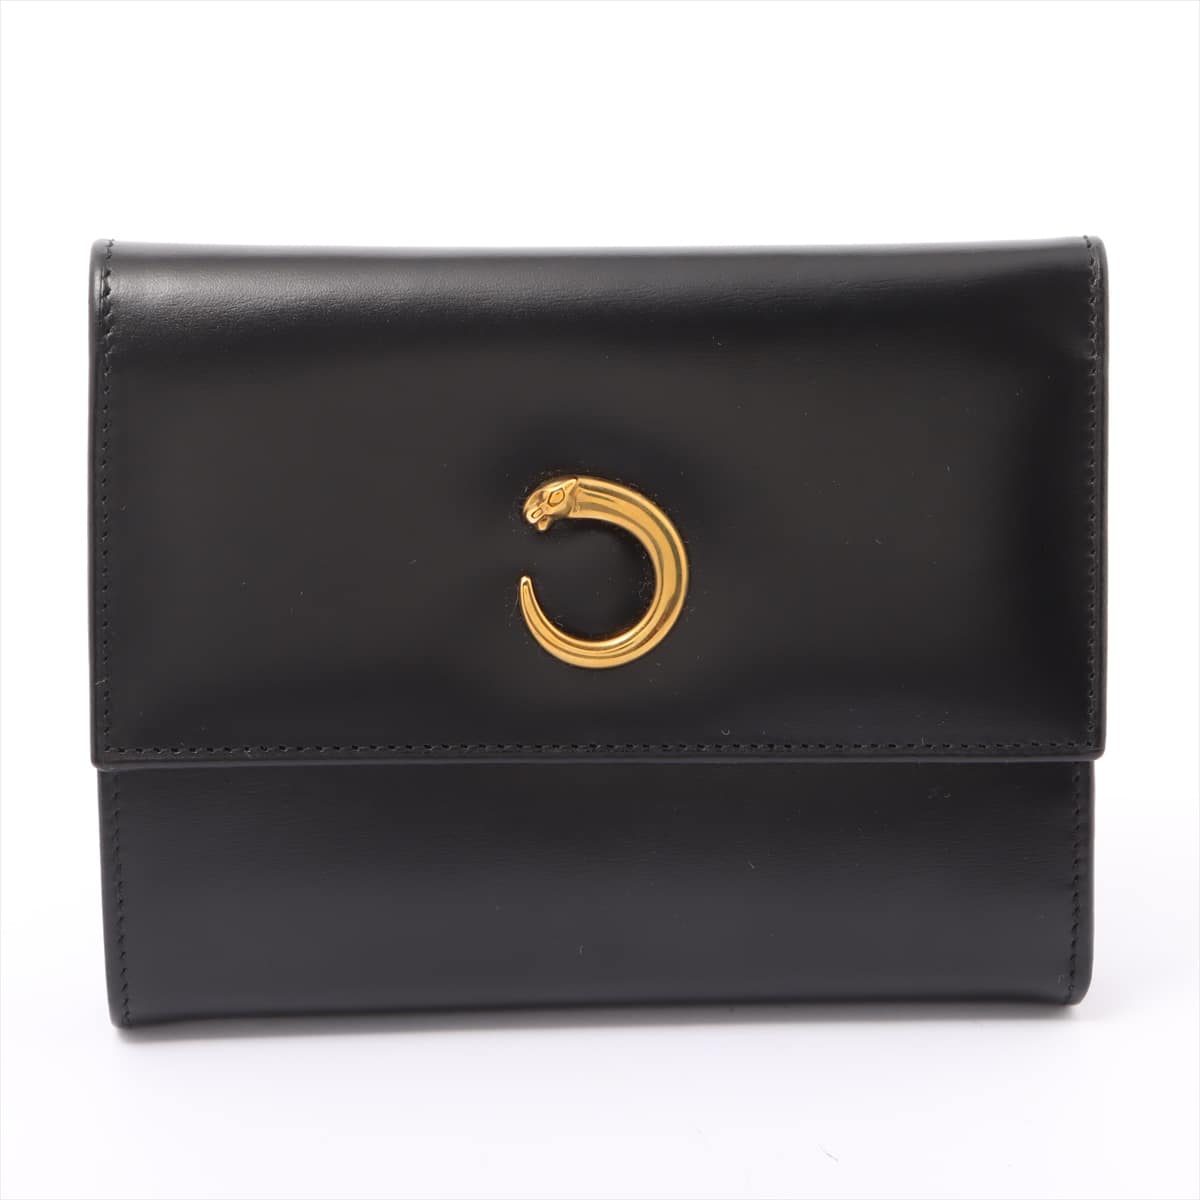 Cartier Panthère Leather Wallet Black